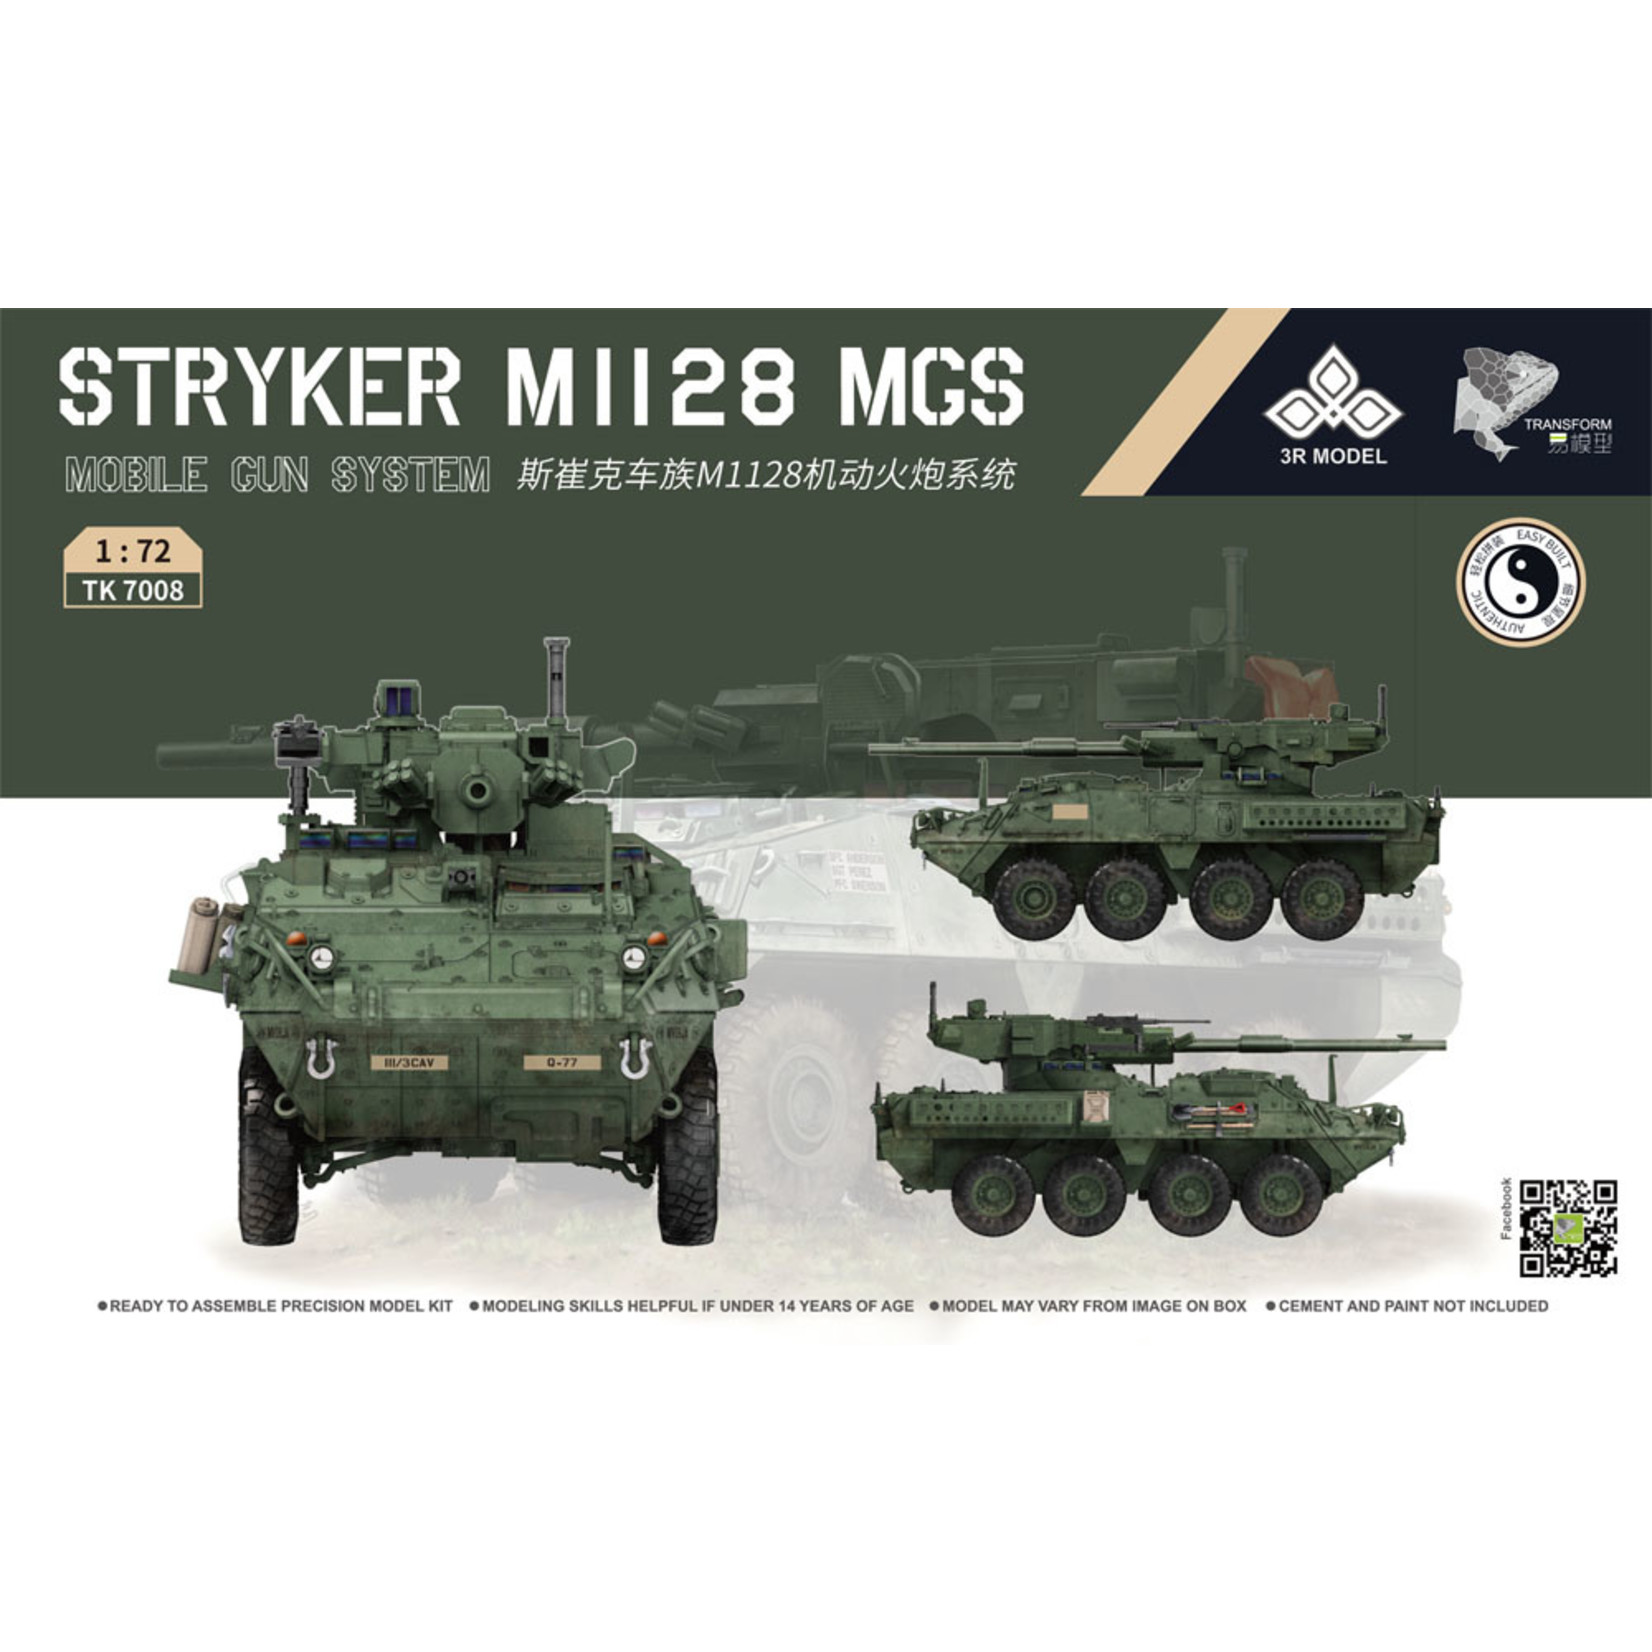 3R Models 1/72 Stryker M1128 MGS Kit